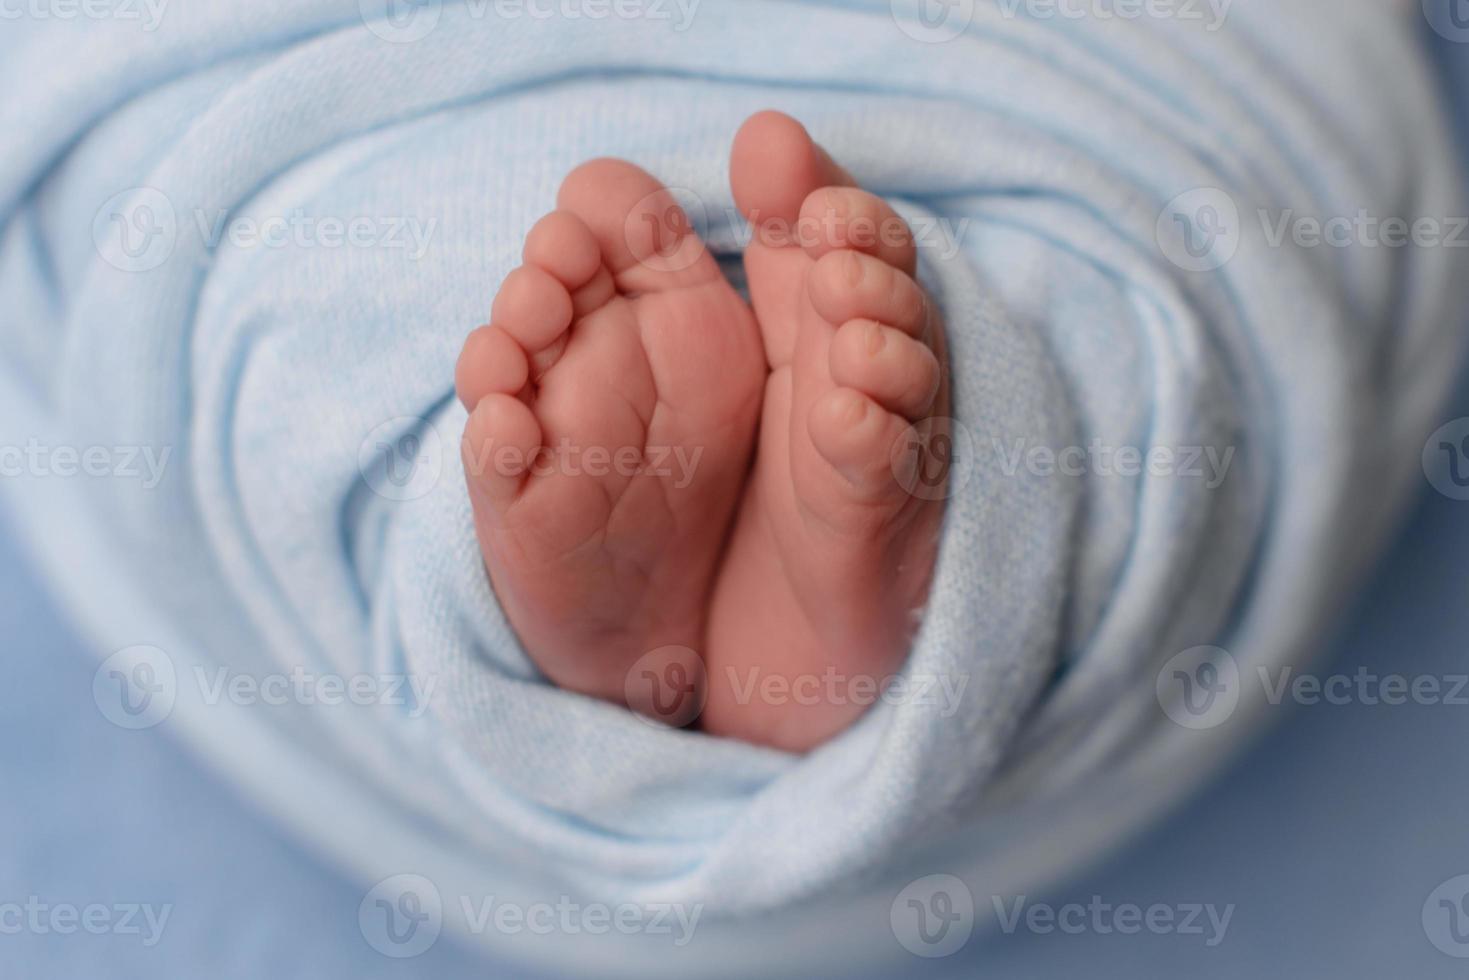 petites belles jambes d'un nouveau-né dans les premiers jours de la vie photo